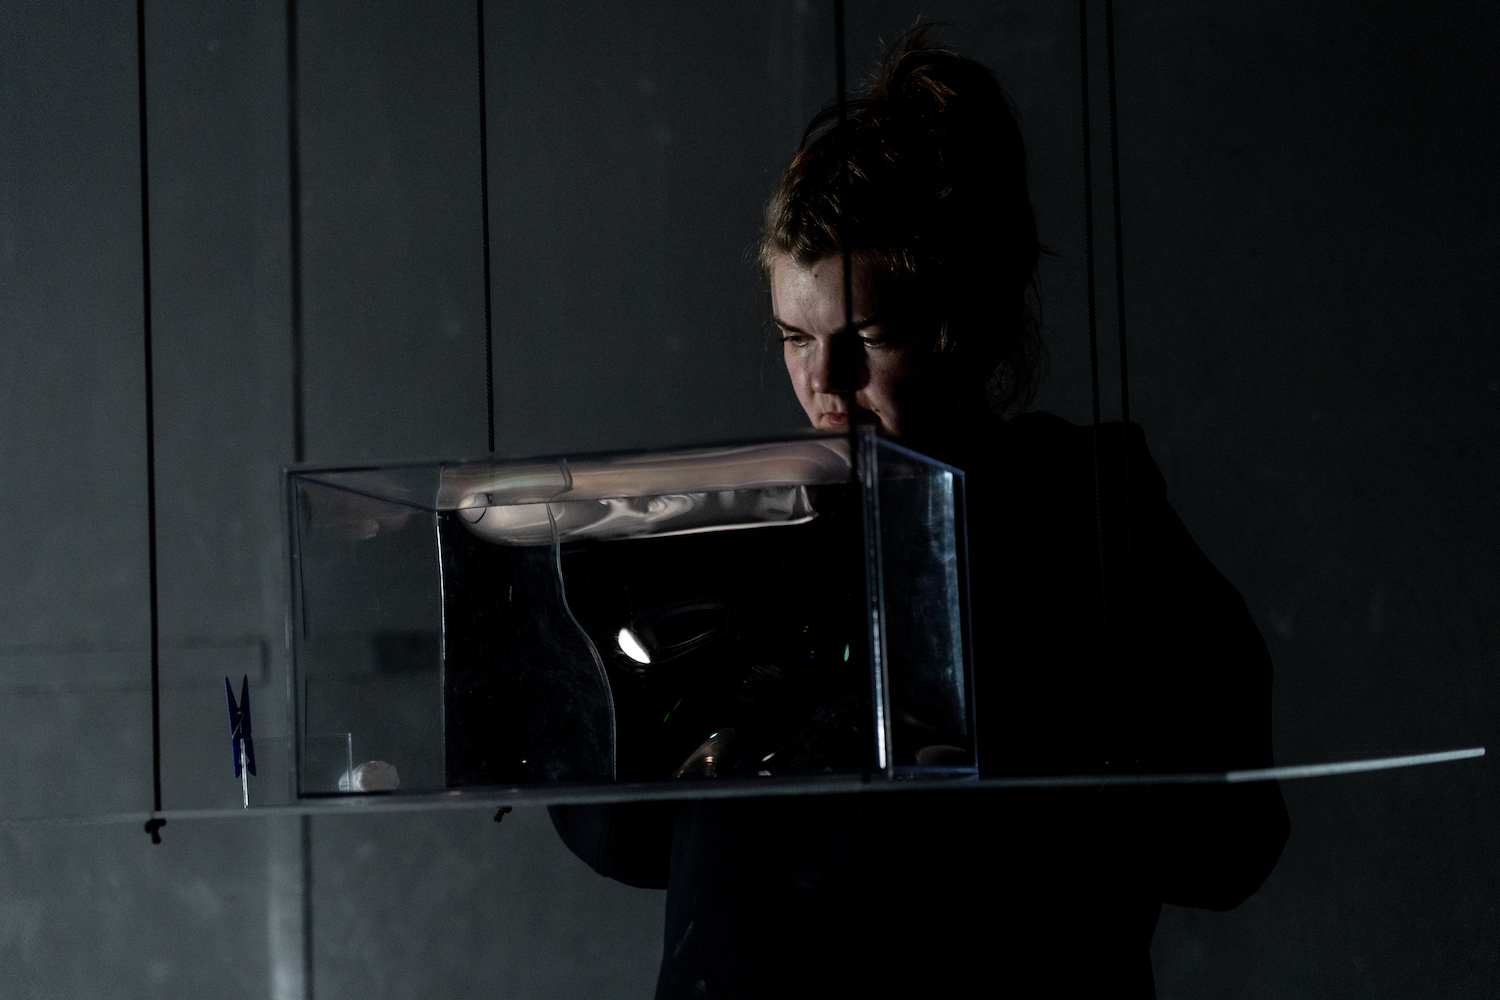 Schauspielerin schaut im Bühnendunkel auf einen aquariumähnlichen Kasten, in dem eine Videoprojektion angedeutet ist.